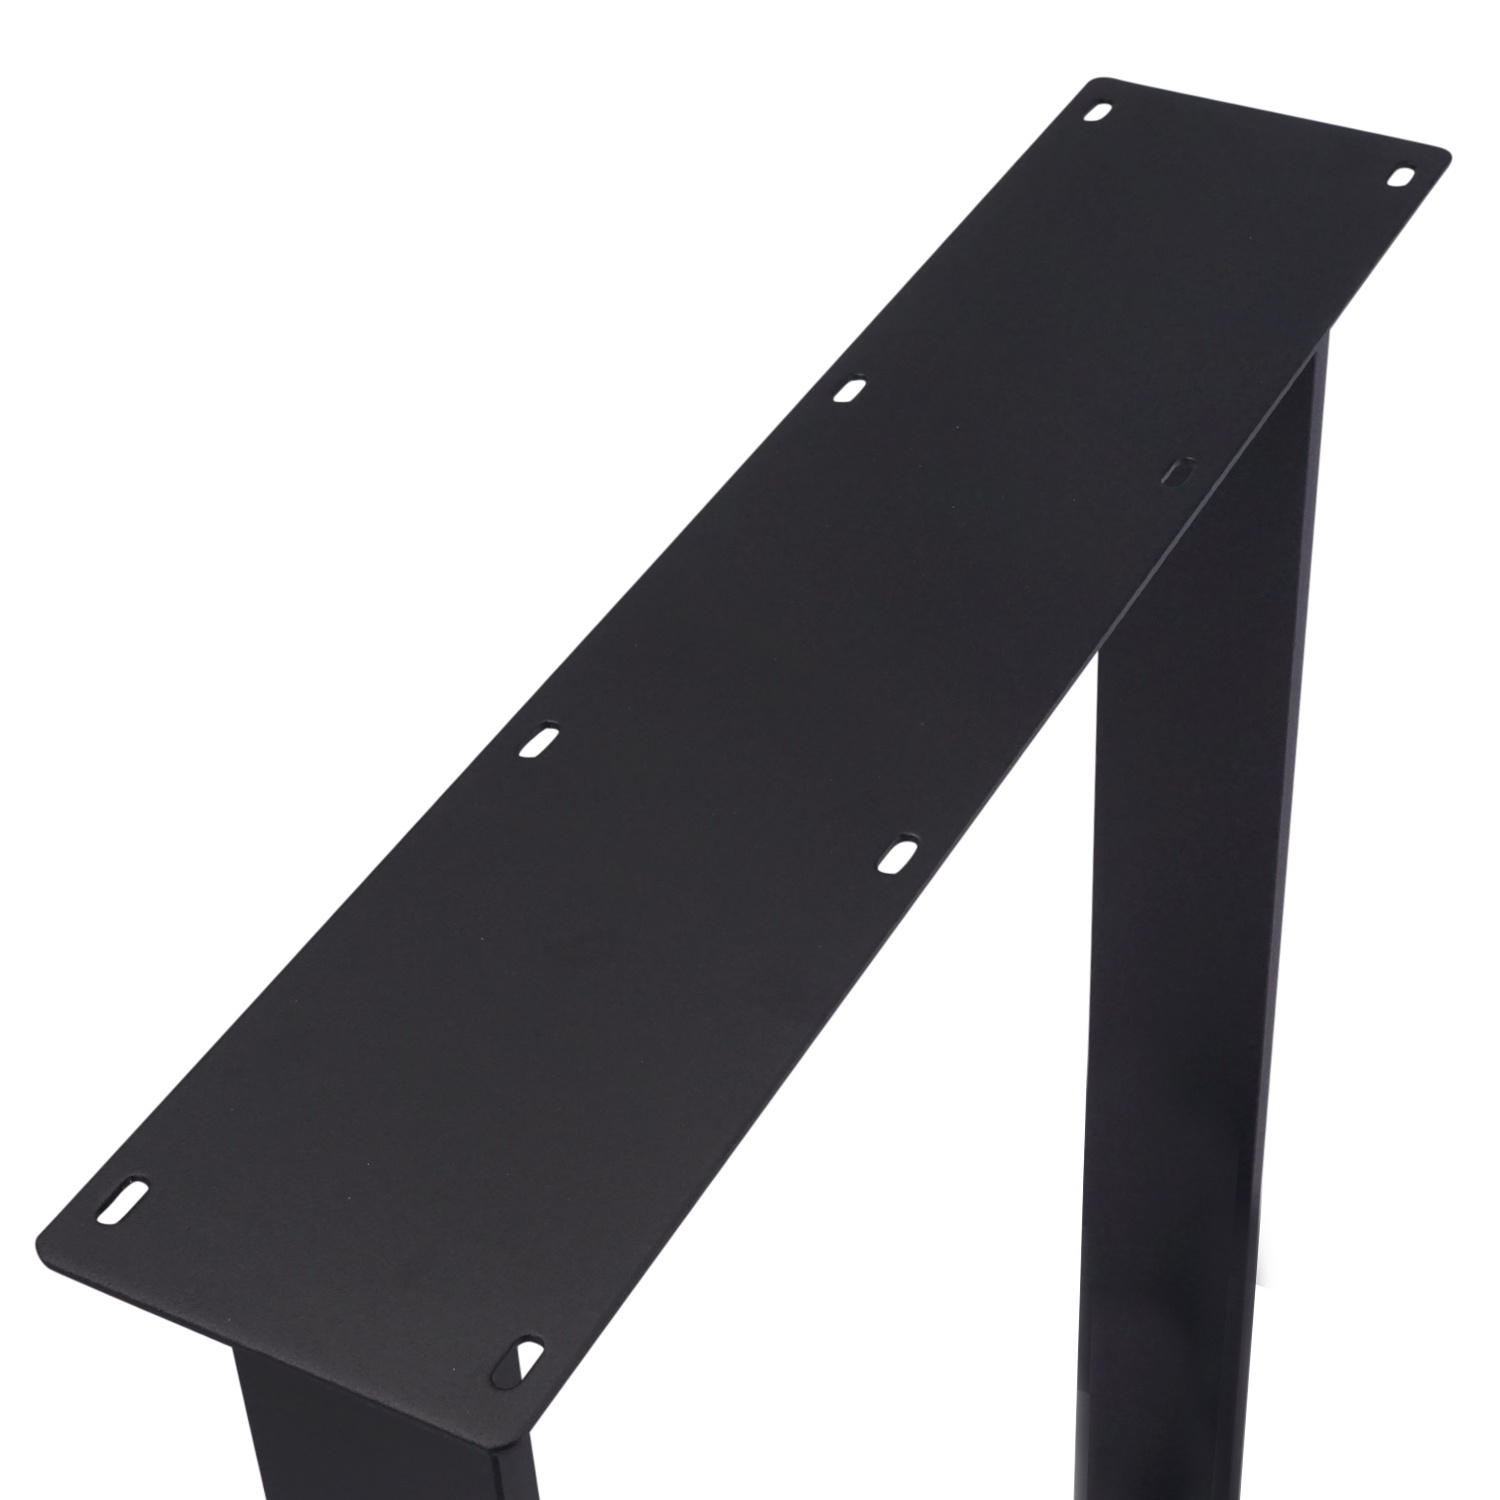  Stalen N-tafelpoten SLANK (SET) 2x10 cm - 67 cm breed - 72 cm hoog - N-poot GEPOEDERCOAT zwart